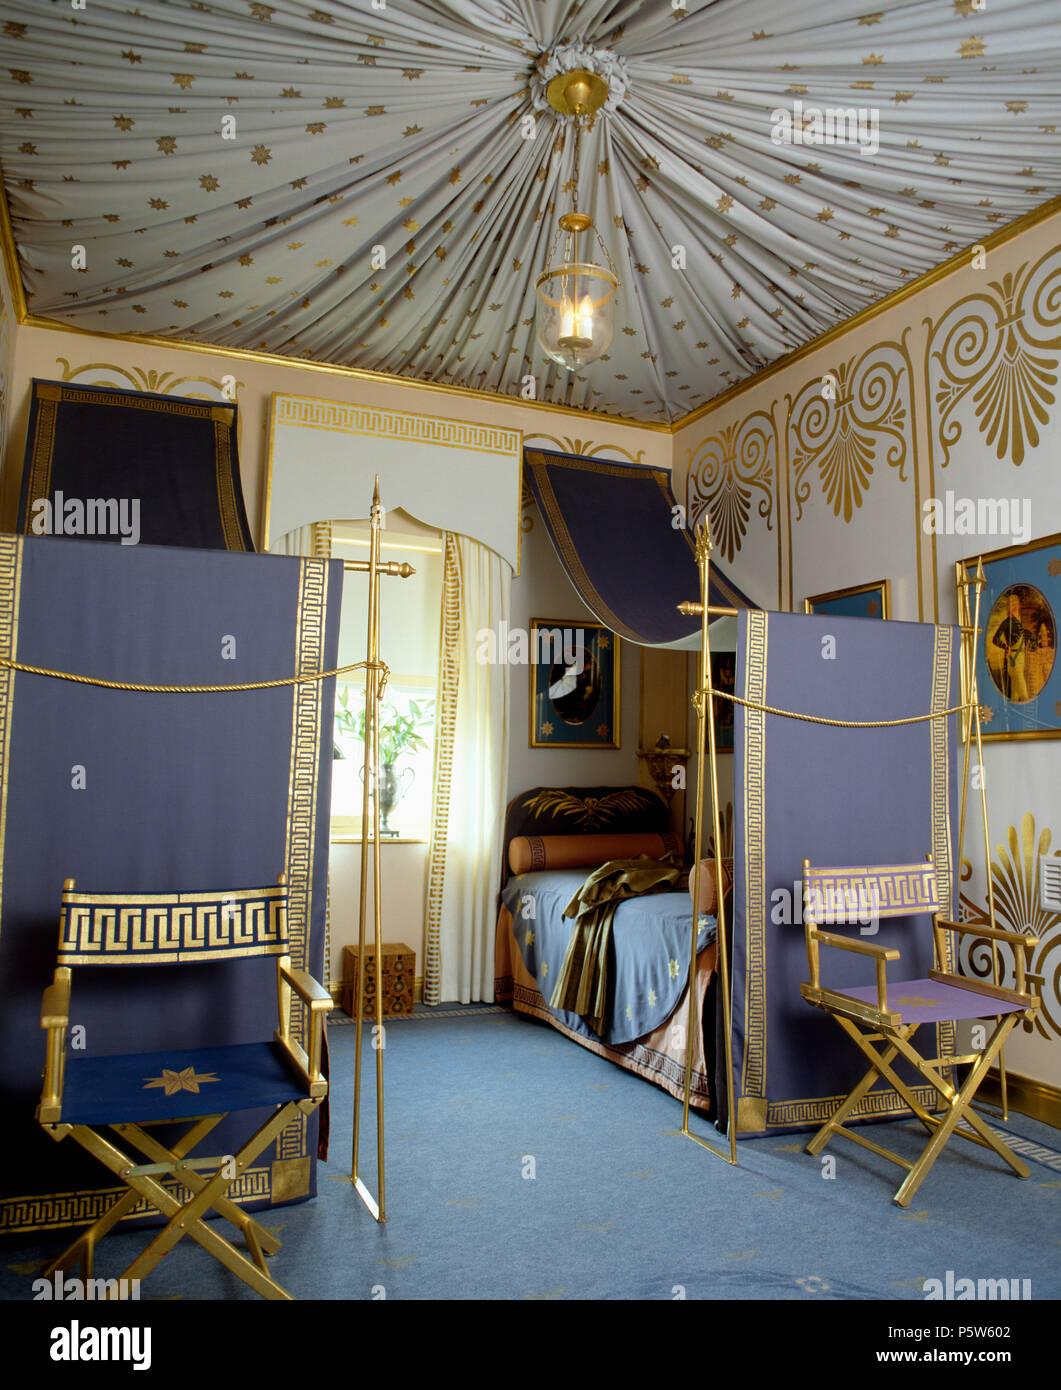 Tented Decke und gold-stenciled Wände im Schlafzimmer mit gold Stühle vor  blauen Tuch Vorhänge unten Einzelbetten lackiert Stockfotografie - Alamy